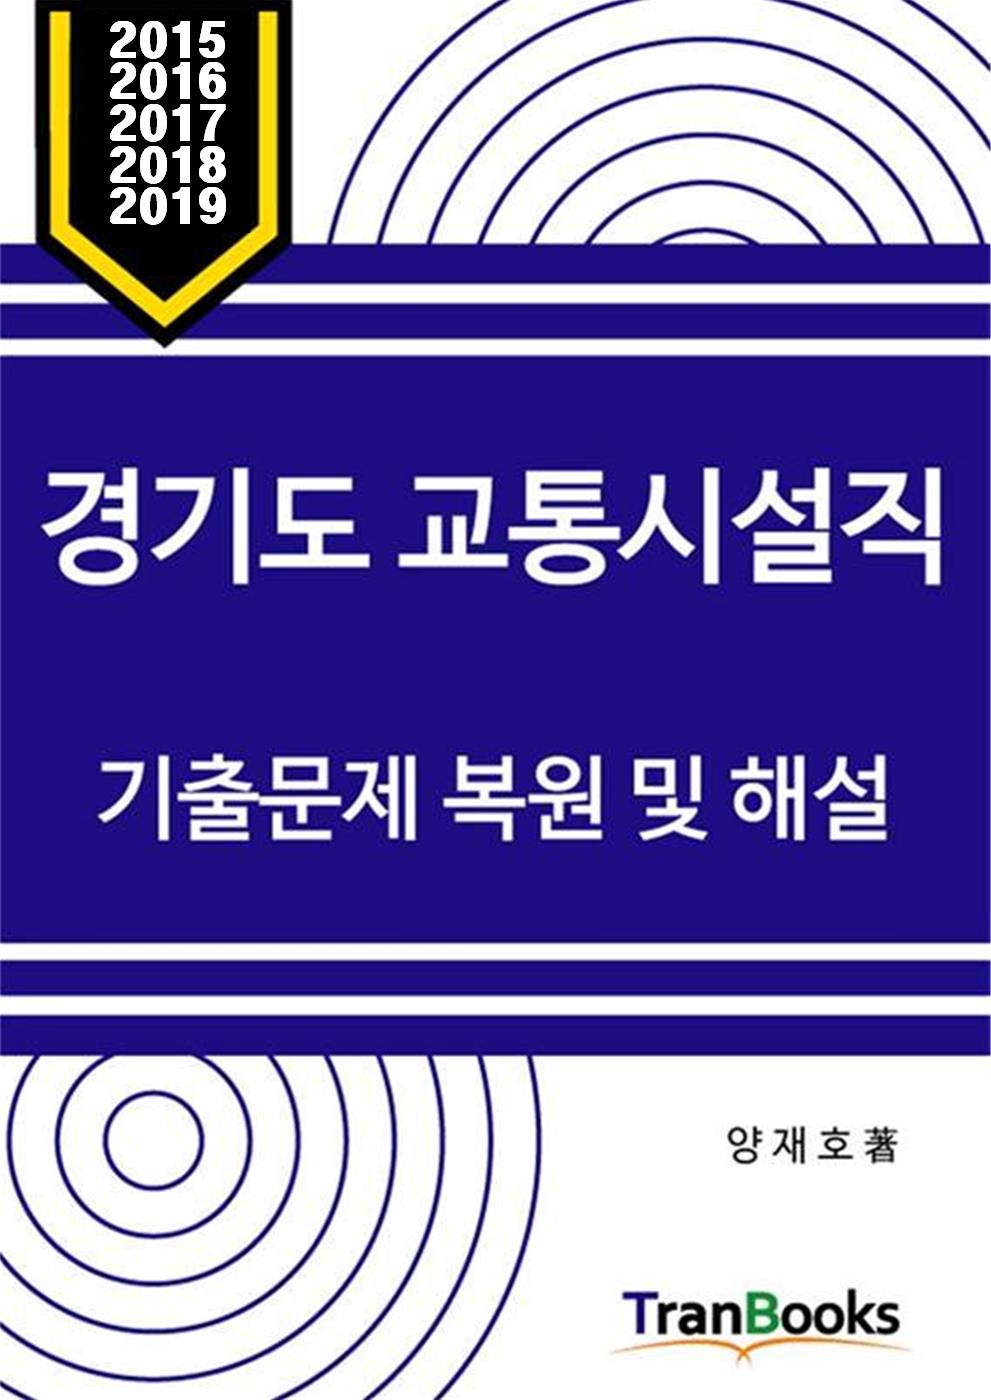 경기도 교통시설직 기출문제 복원 및 해설 (15, 16, 17, 18, 19, 20, 21년도)